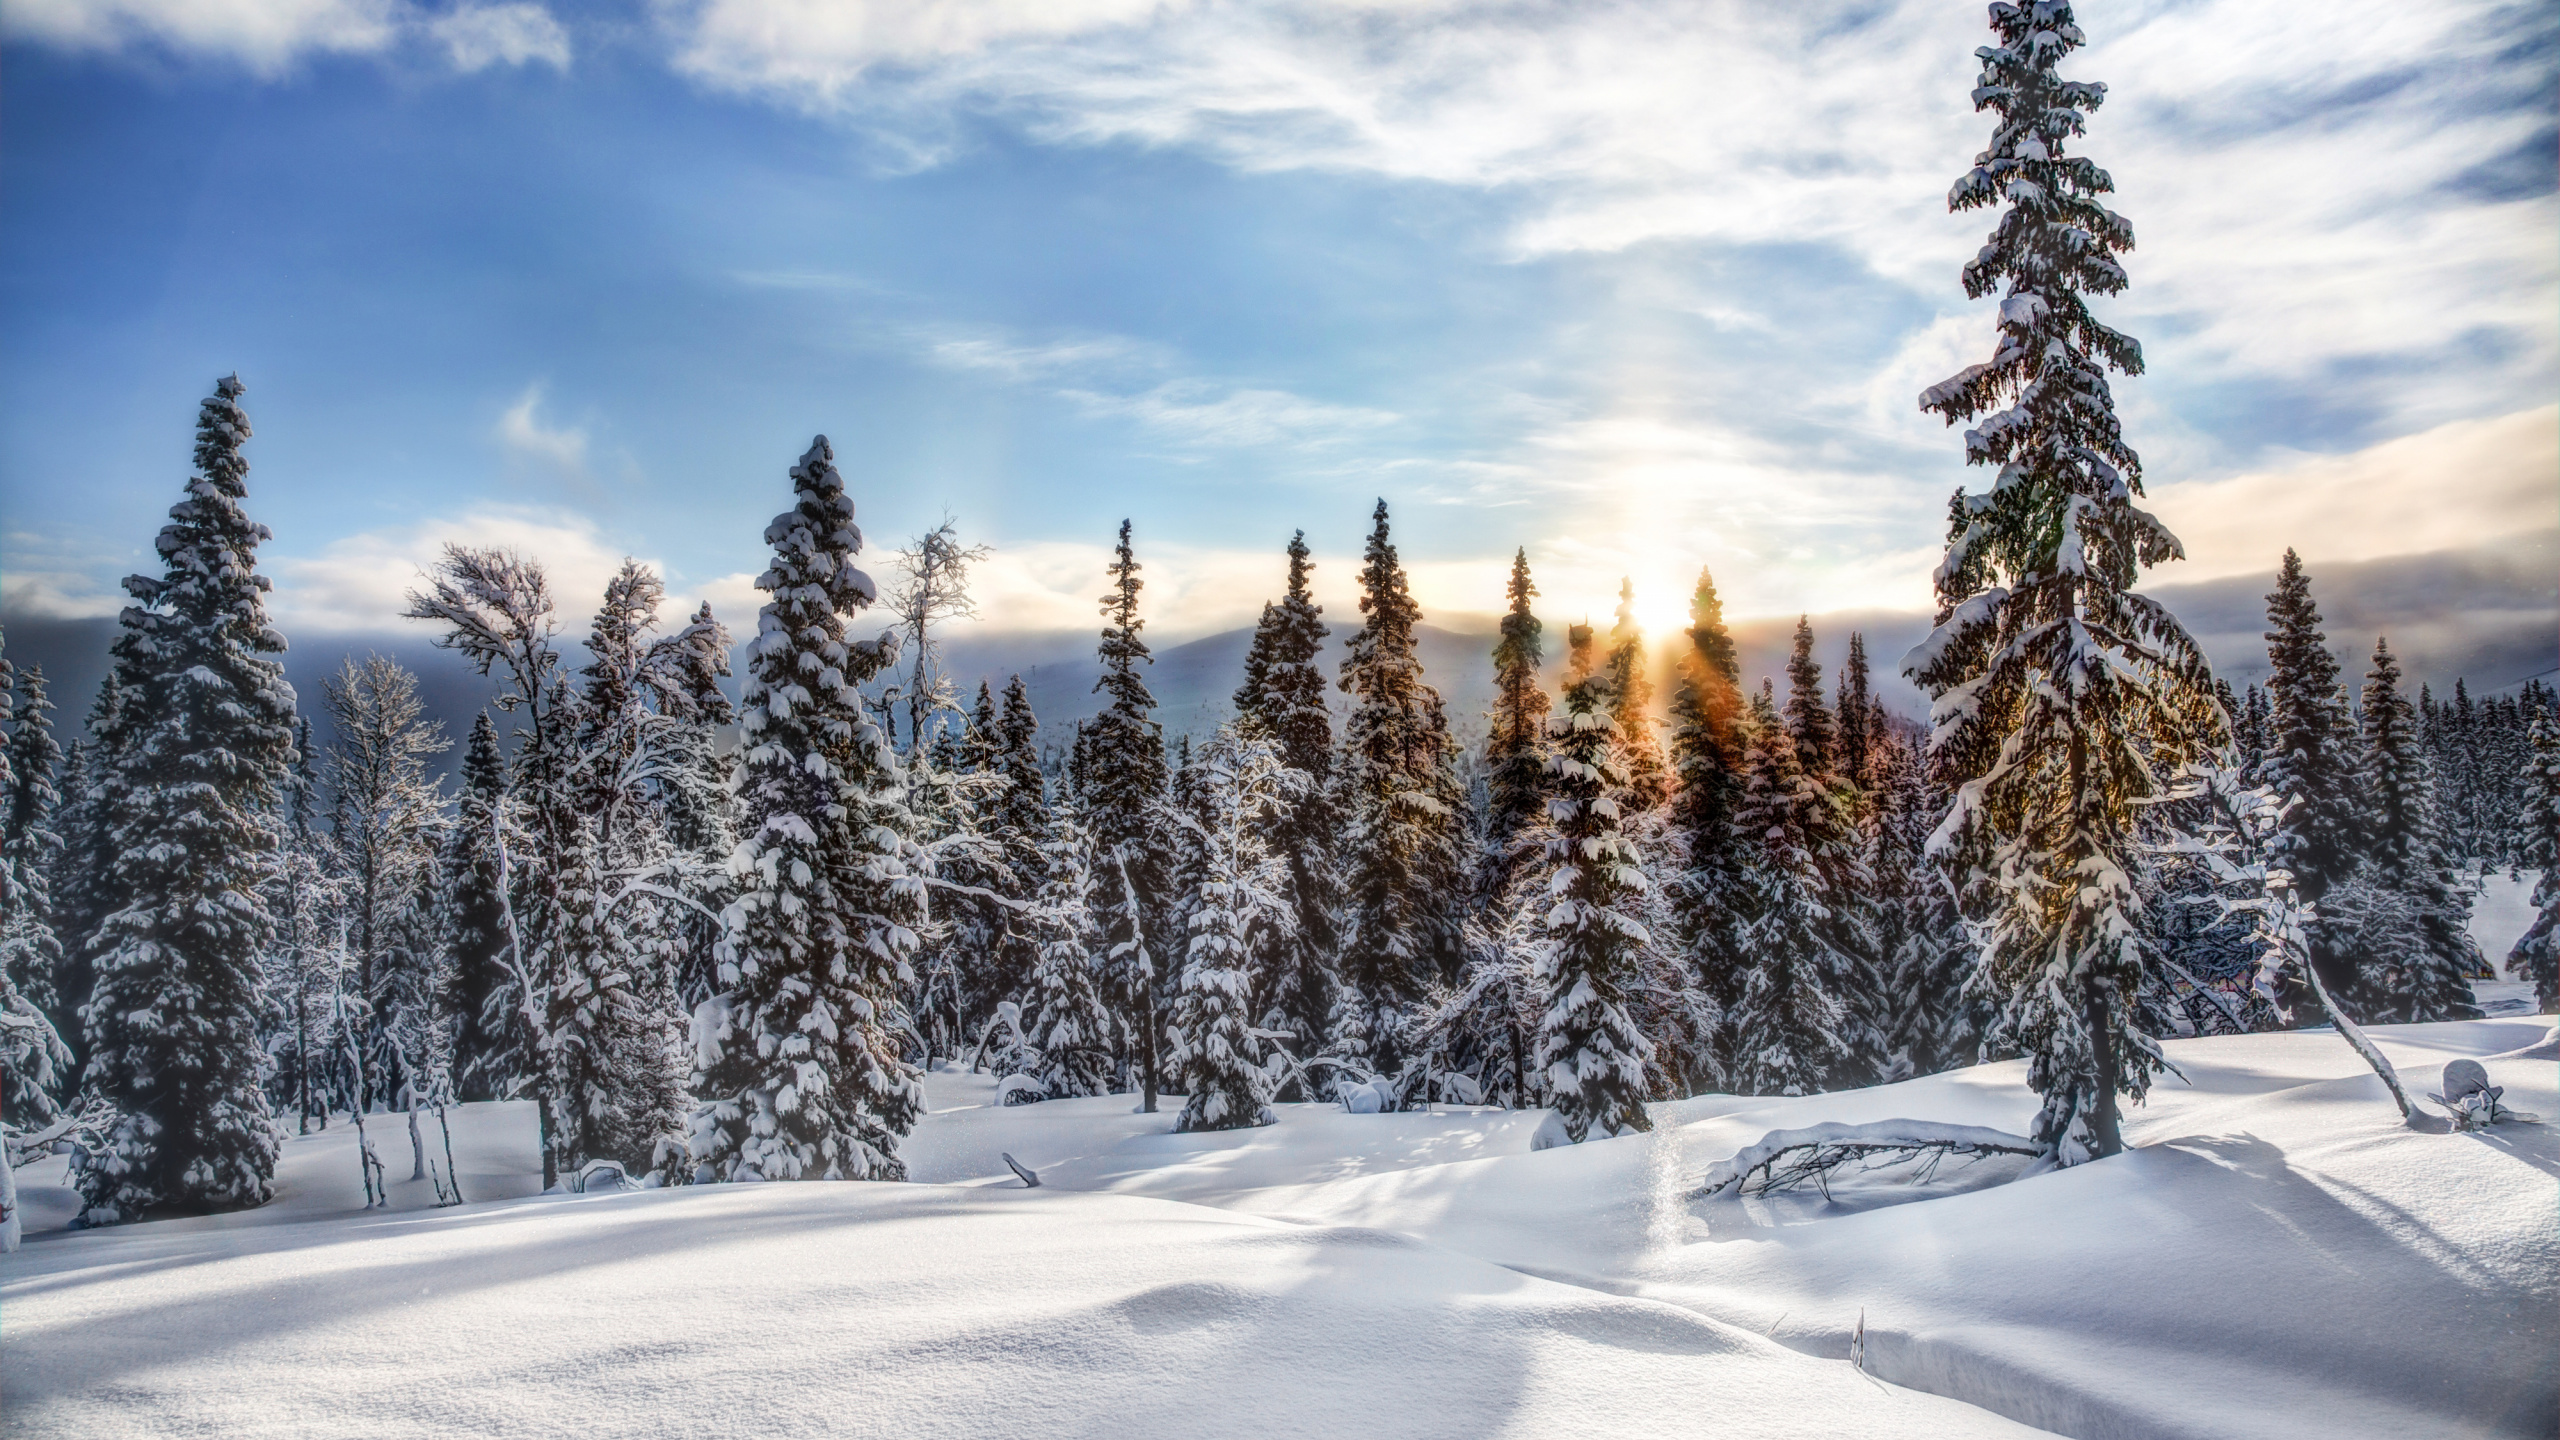 冬天, 冻结, 荒野, 天空, 松的家庭 壁纸 2560x1440 允许